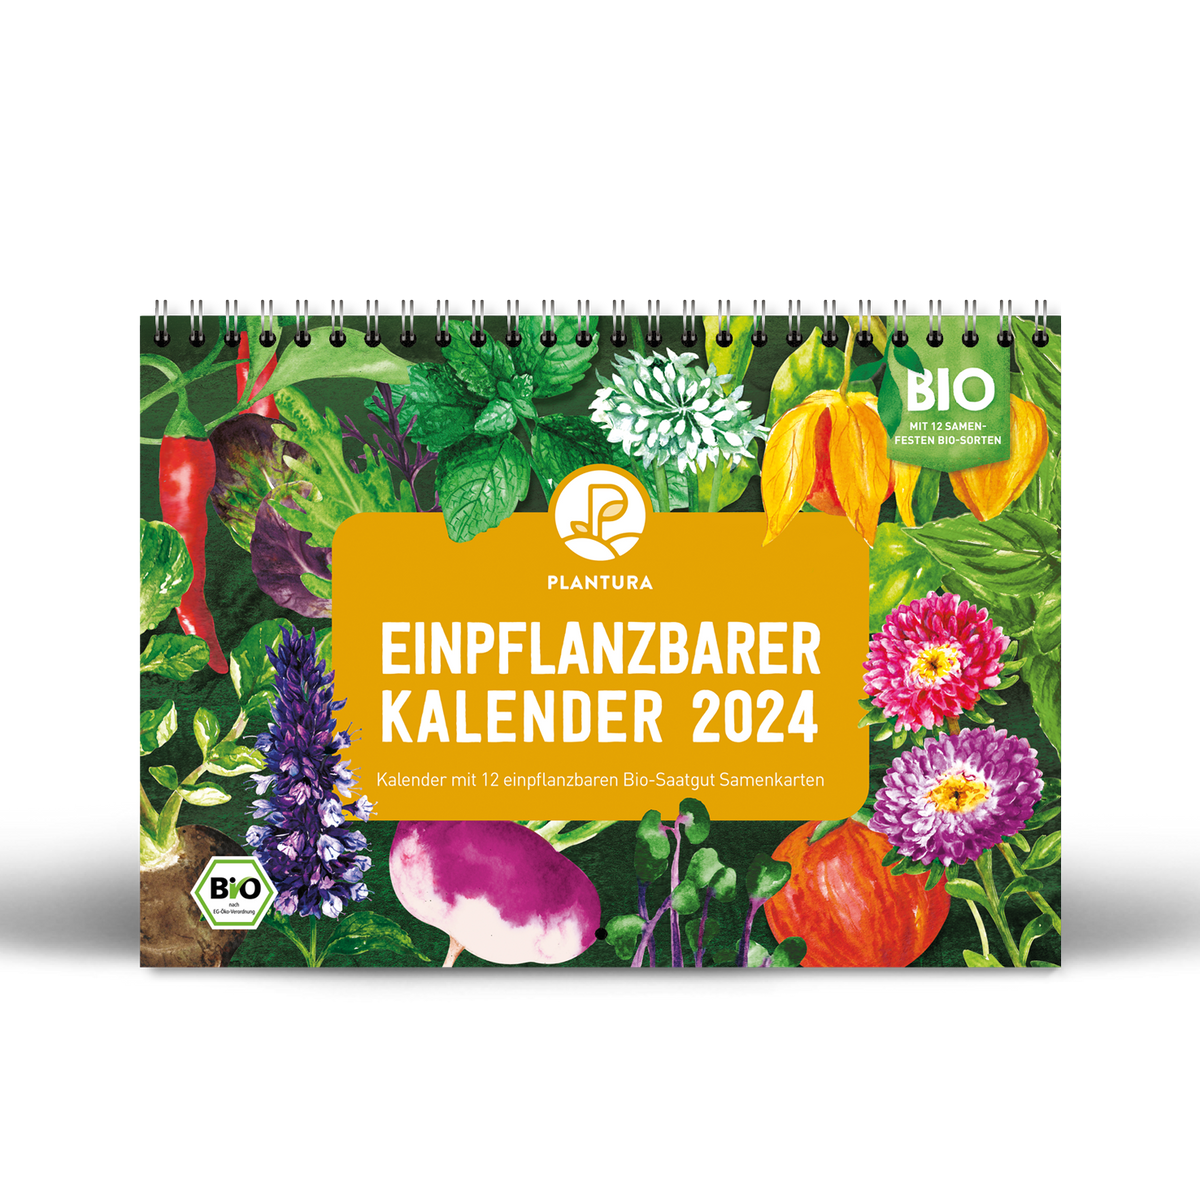 Einpflanzbarer Kalender 2024